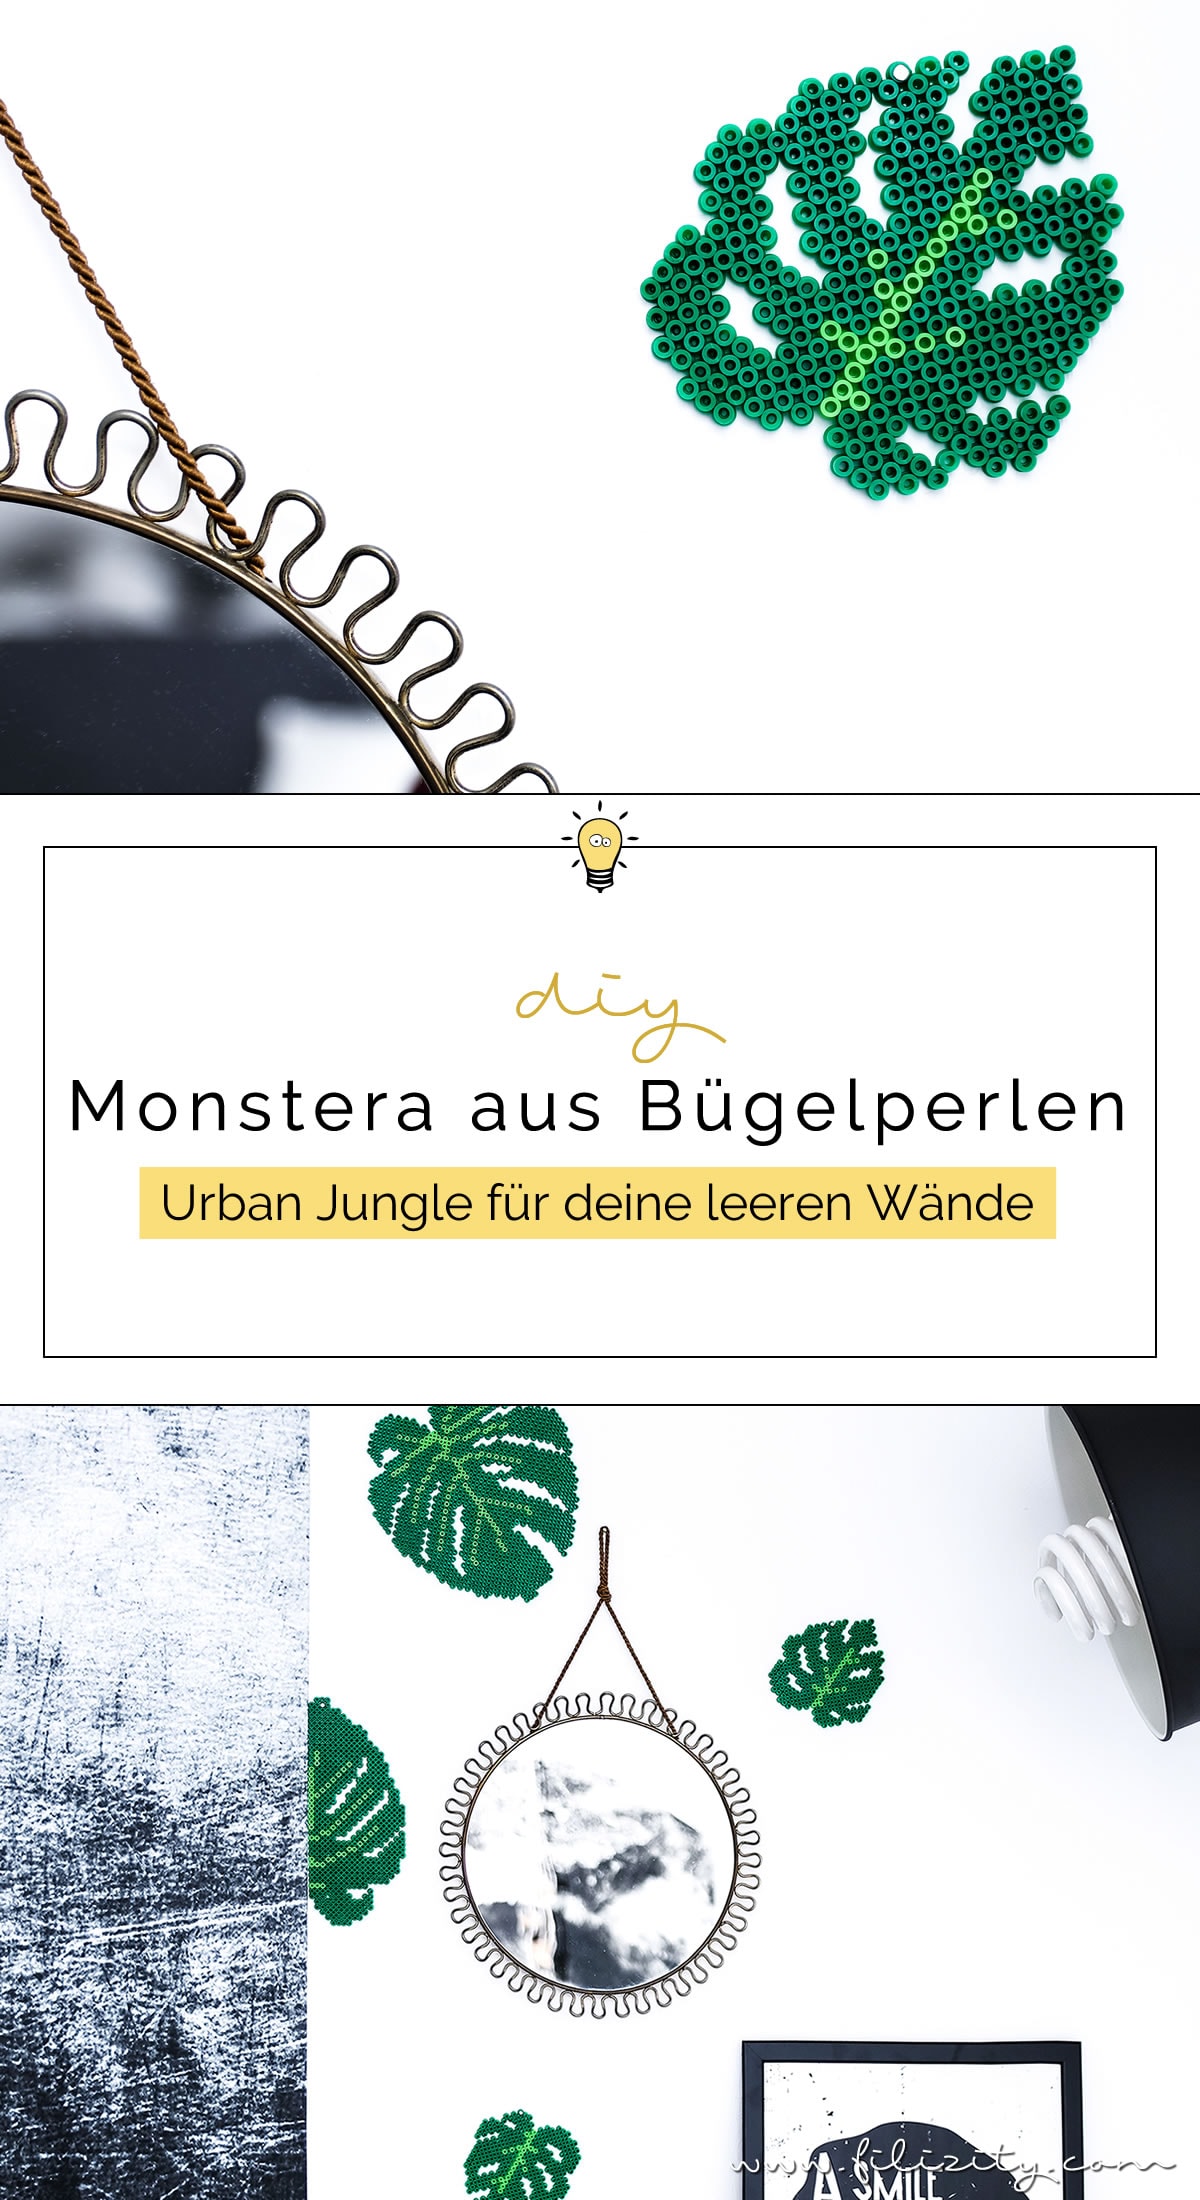 DIY Urban Jungle: Bügelperlen-Monstera - Just Bead It! #bügelperlen #monstera